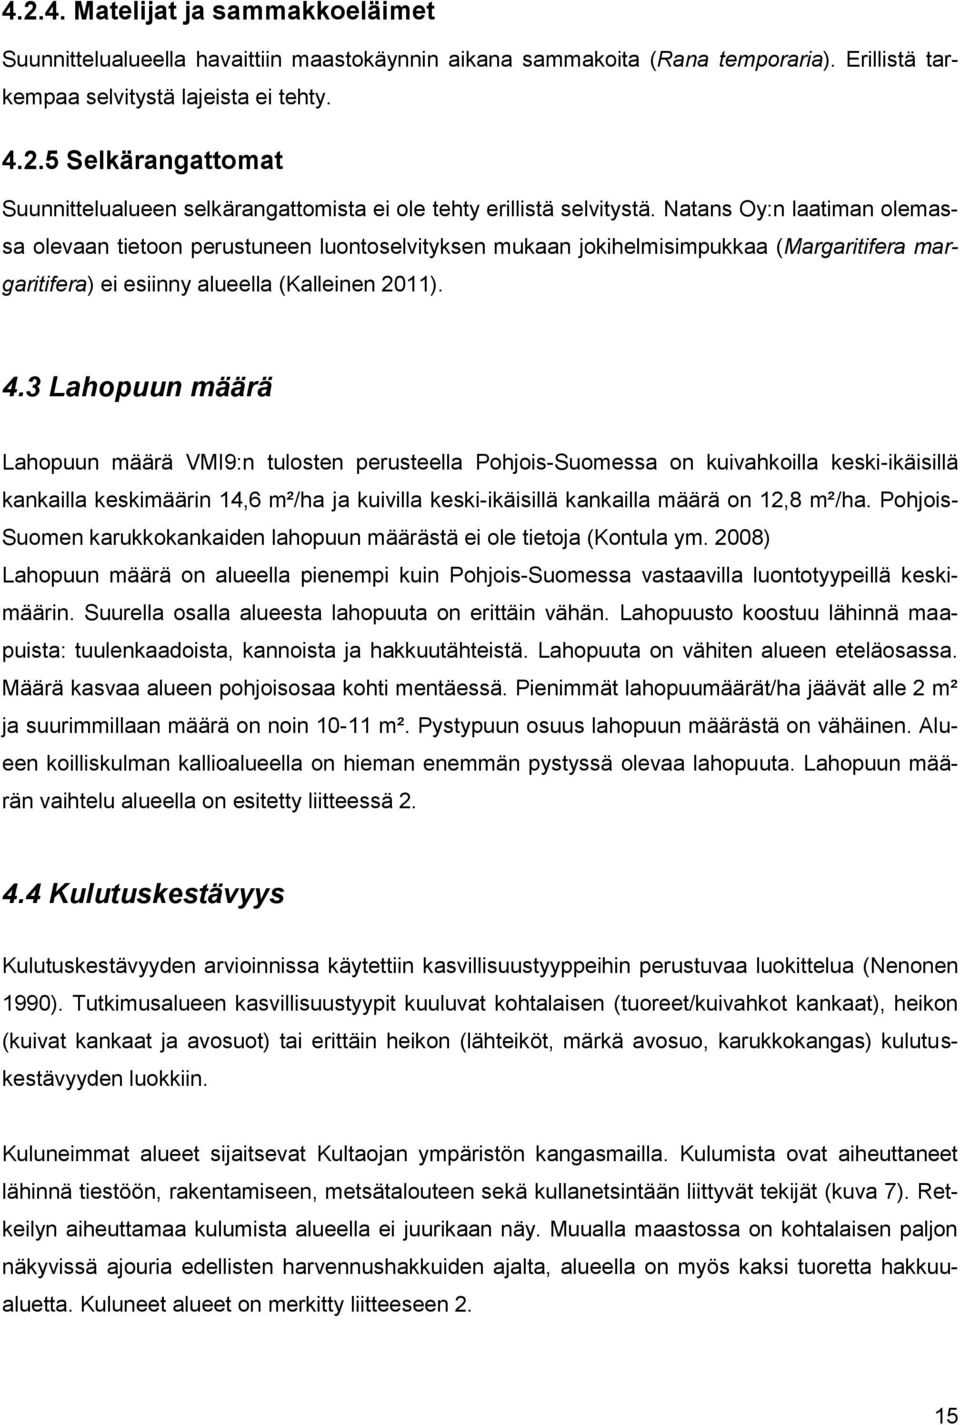 3 Lahopuun määrä Lahopuun määrä VMI9:n tulosten perusteella Pohjois-Suomessa on kuivahkoilla keski-ikäisillä kankailla keskimäärin 14,6 m²/ha ja kuivilla keski-ikäisillä kankailla määrä on 12,8 m²/ha.